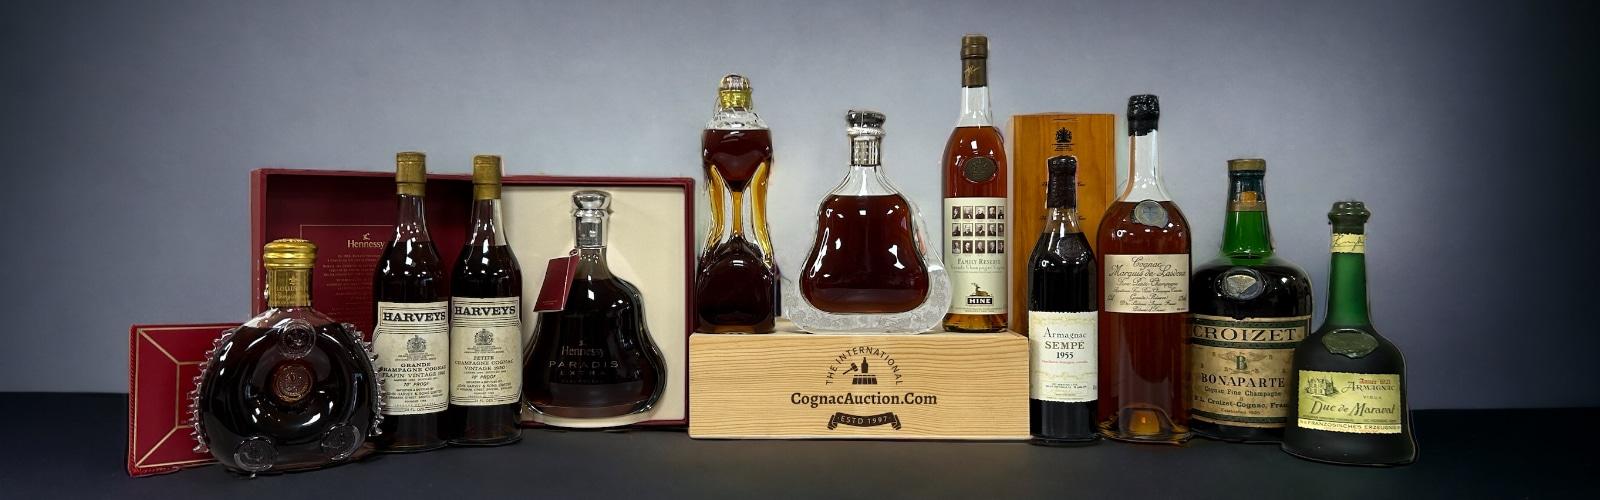 Cognac Auction